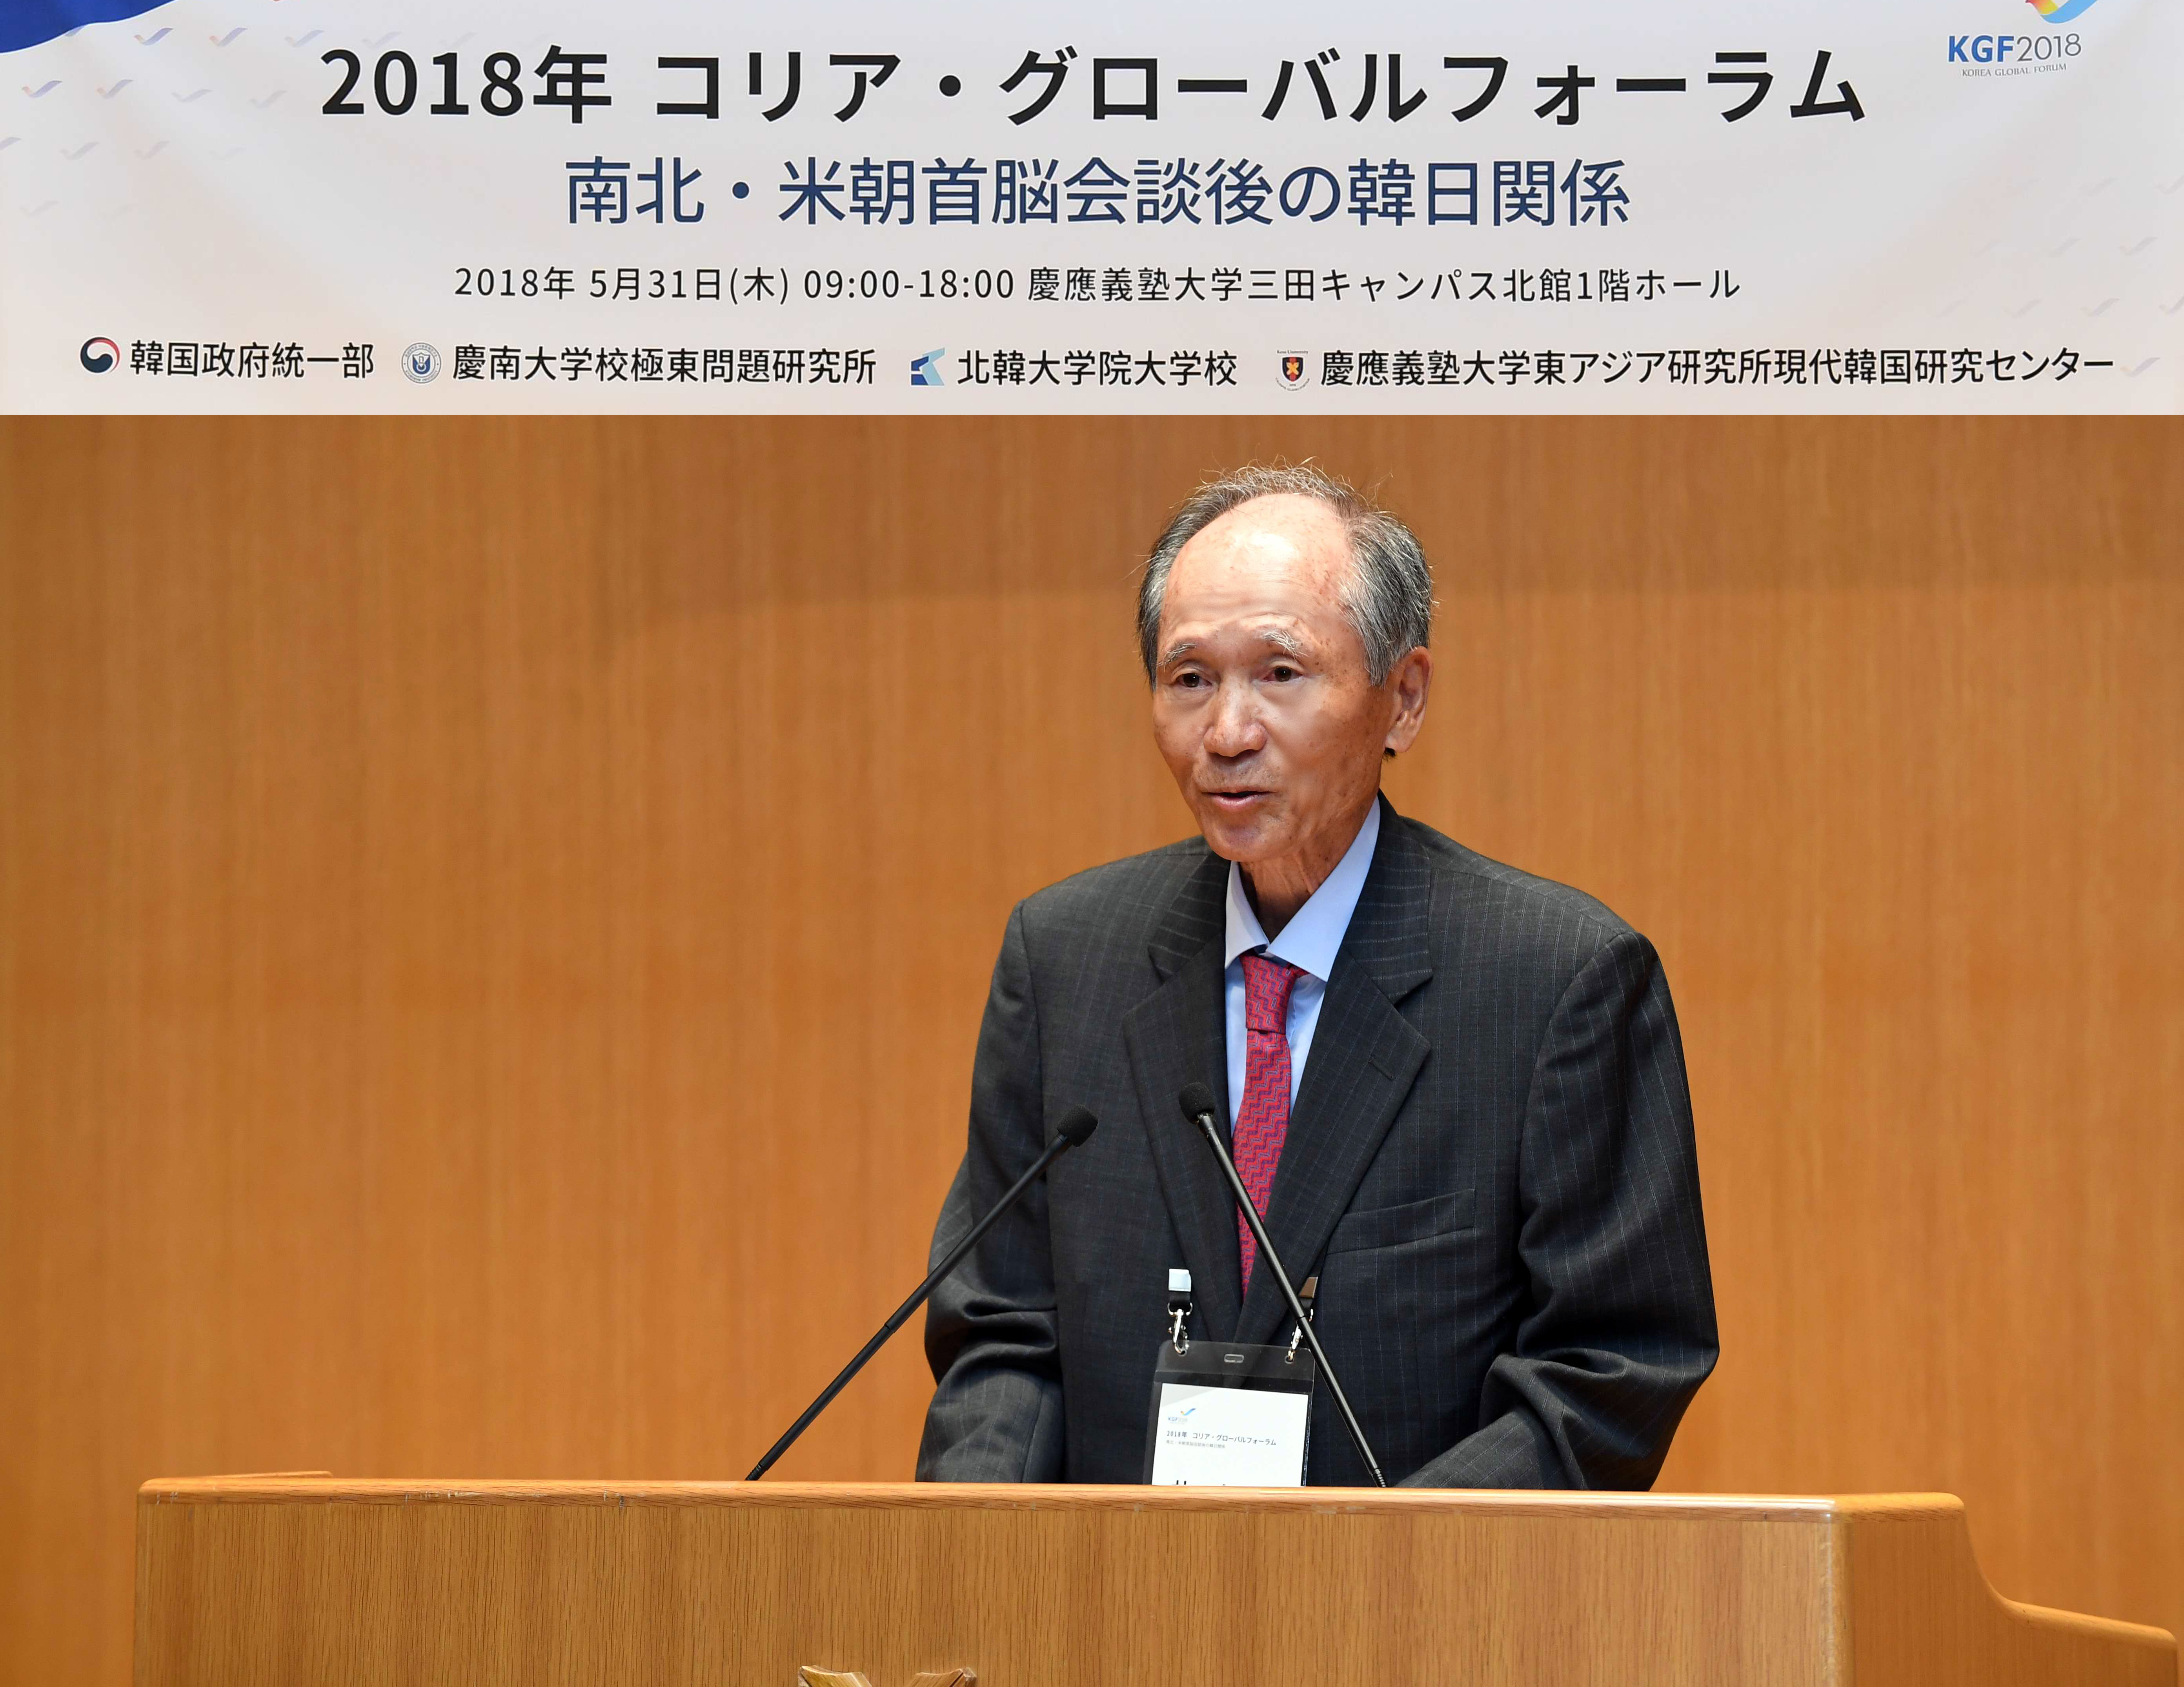 박재규 경남대 총장이 31일 일본 도쿄 게이오대 미타캠퍼스에서 열린 ‘2018 한반도 국제포럼’에서 개회사를 하고 있다. 경남대 제공